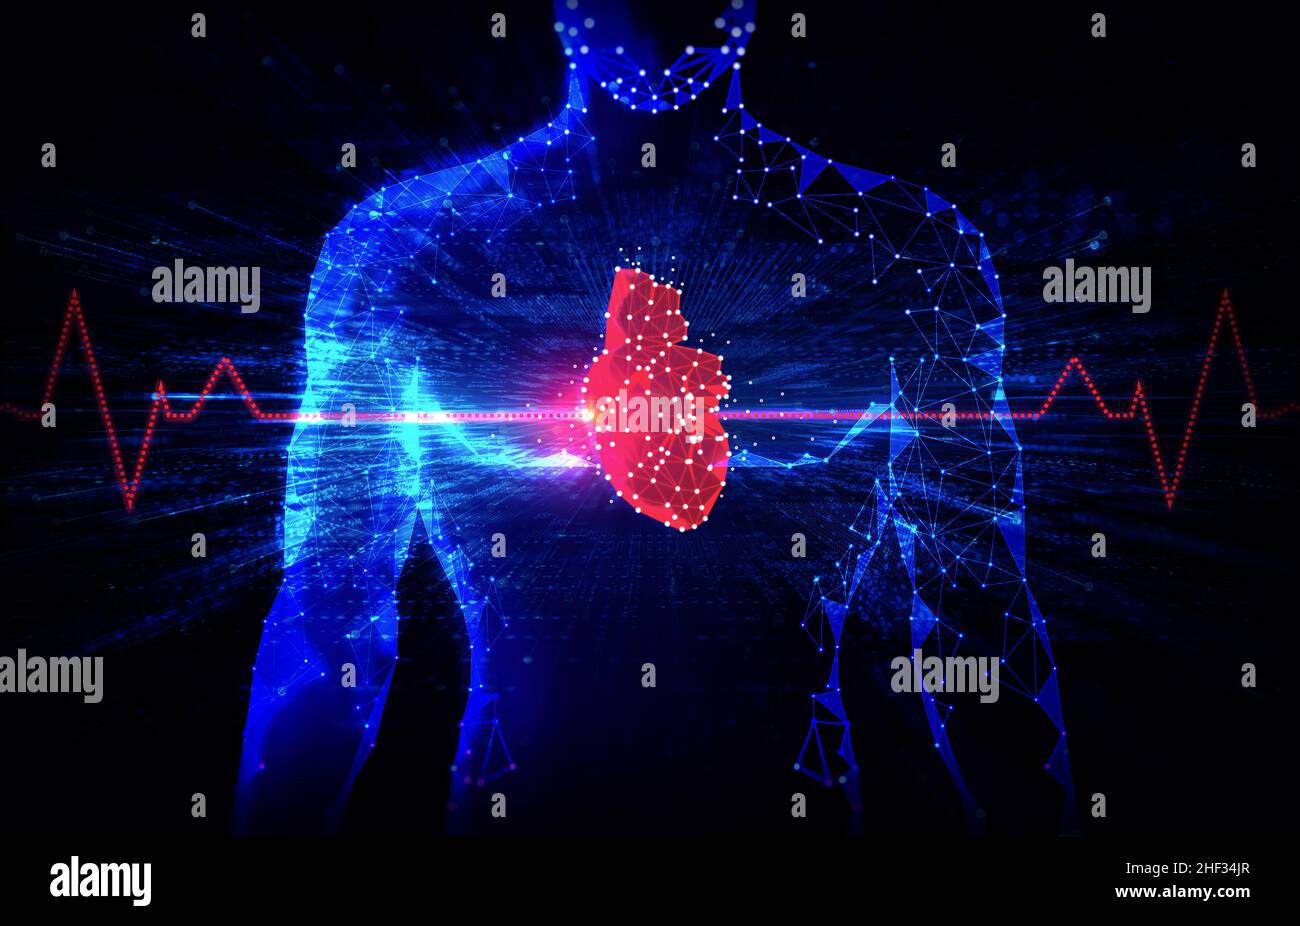 Zukunftstechnologien in der Kardiologie und im Gesundheitswesen - Neue Technologien zur Behandlung von Herzerkrankungen - Elektrophysiologie - Innovation im medizinischen Bereich Stockfoto